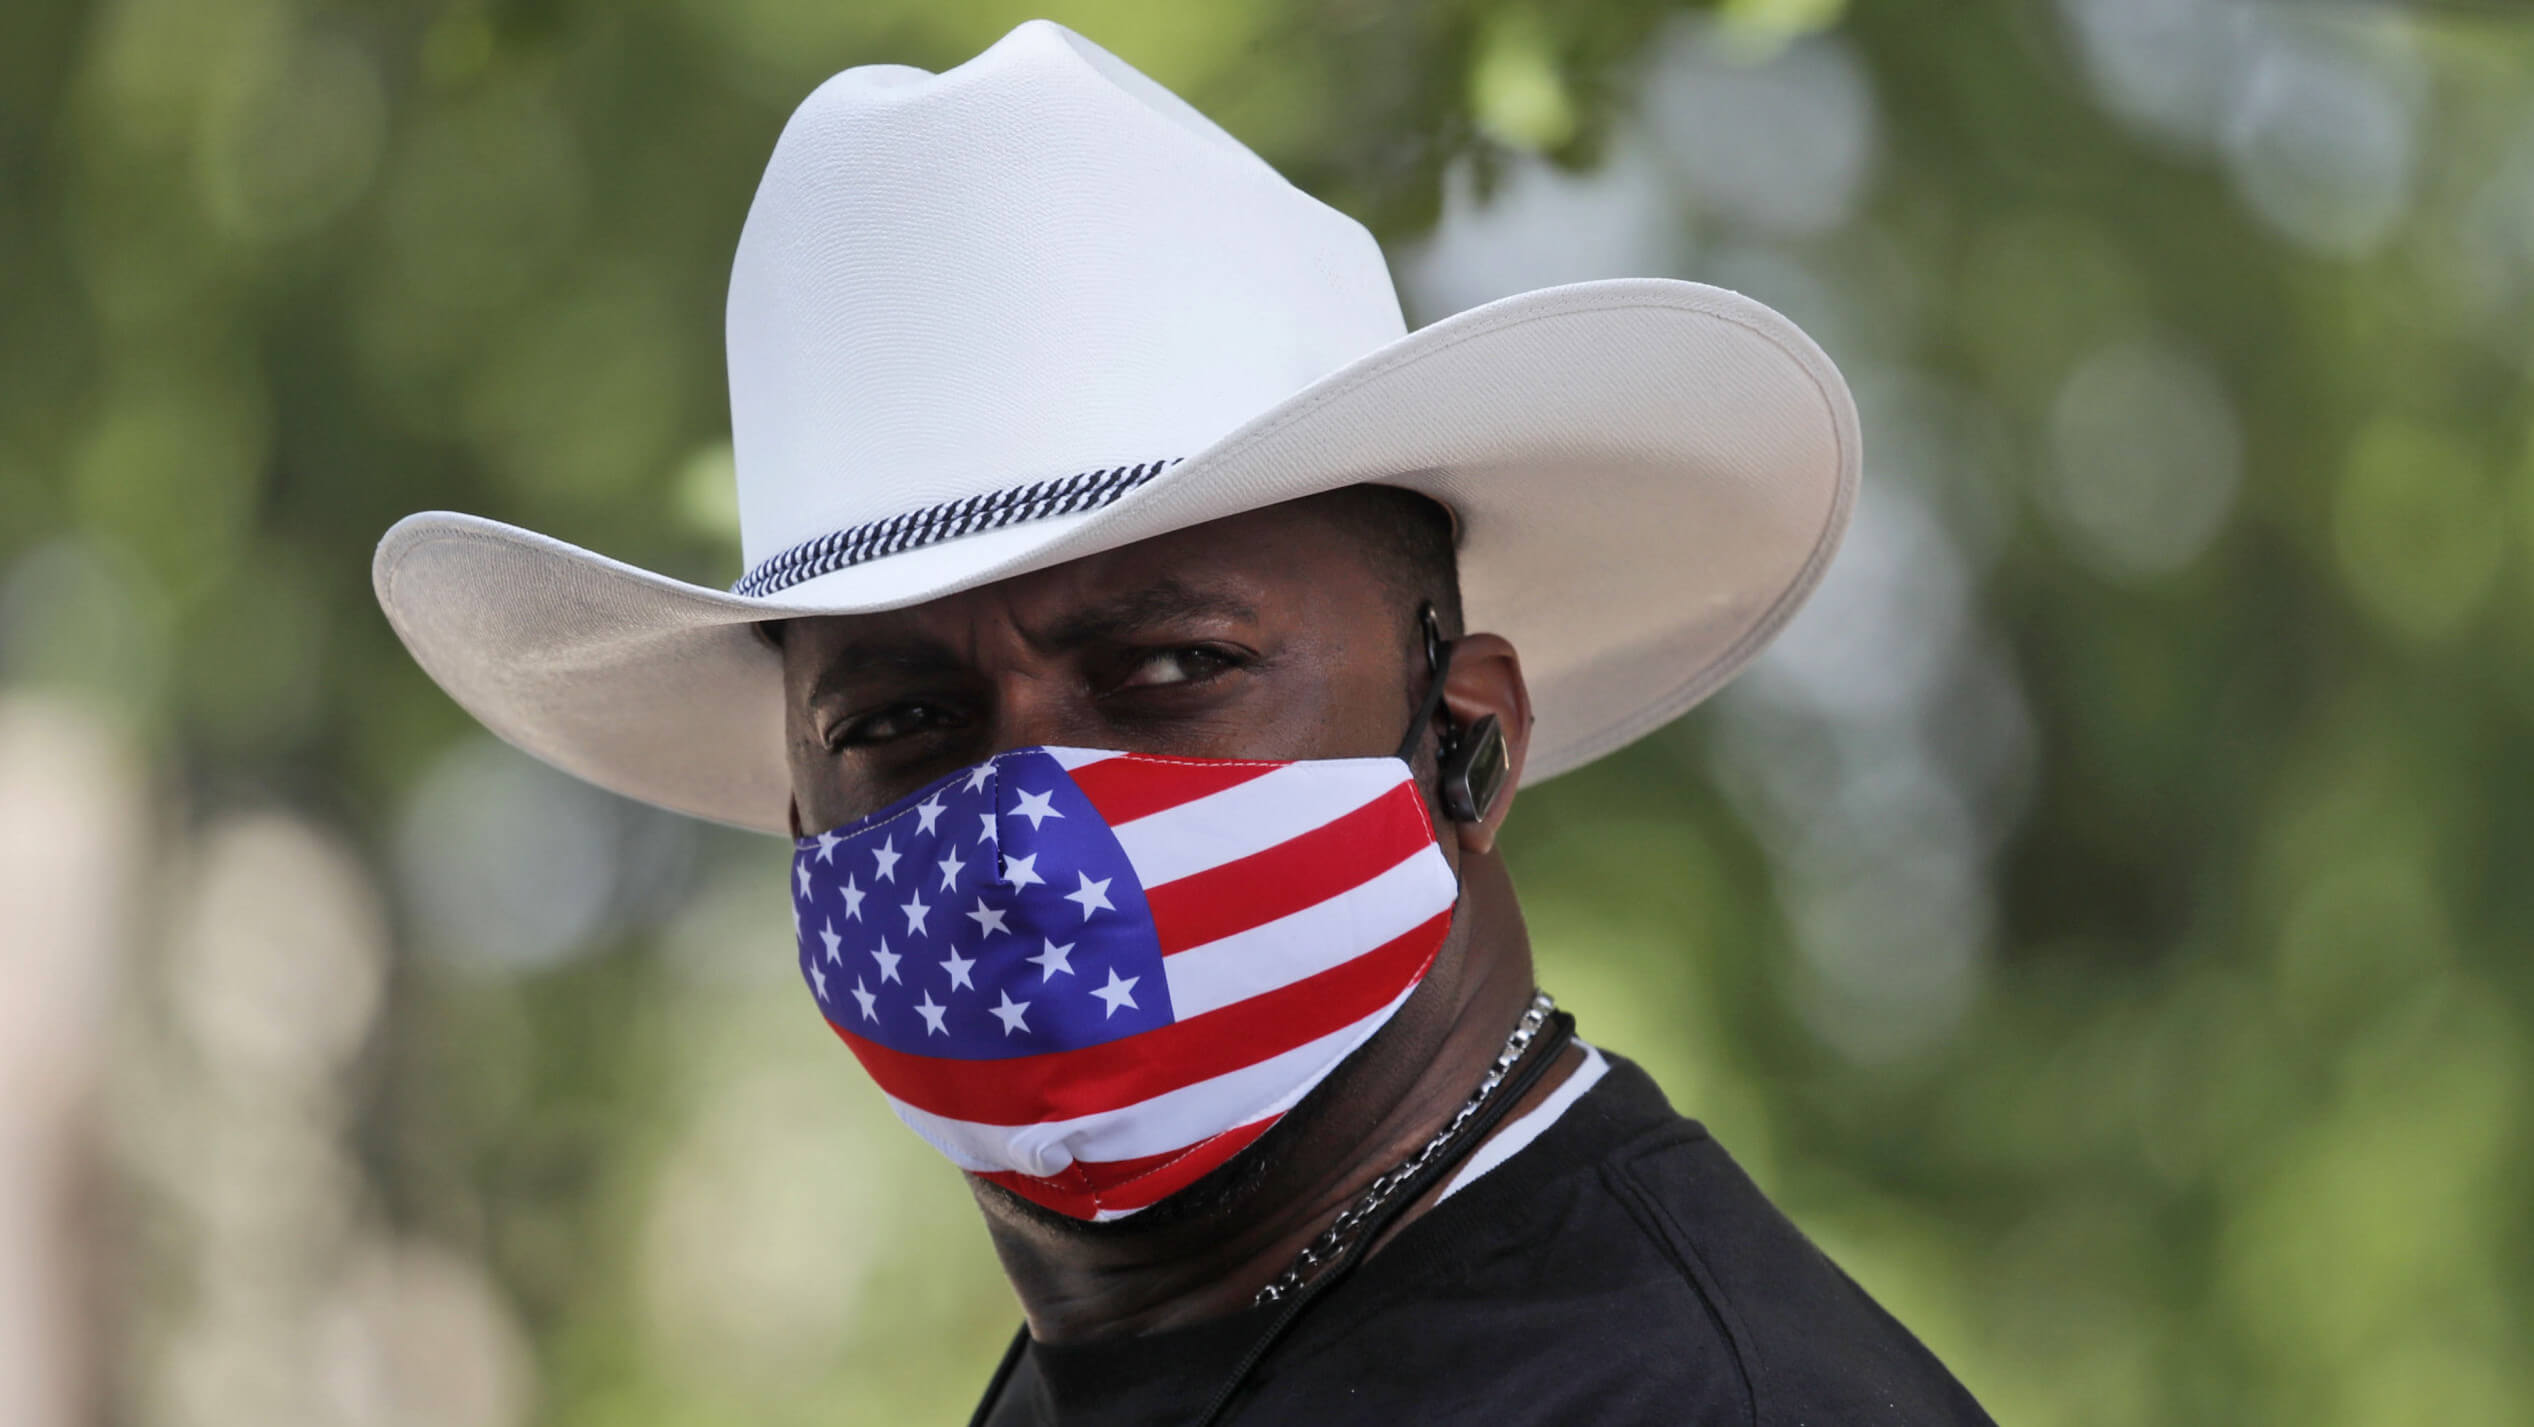 Mann mit Cowboyhut und Mund-Nase-Bedeckung mit dem Motiv der US-Flagge